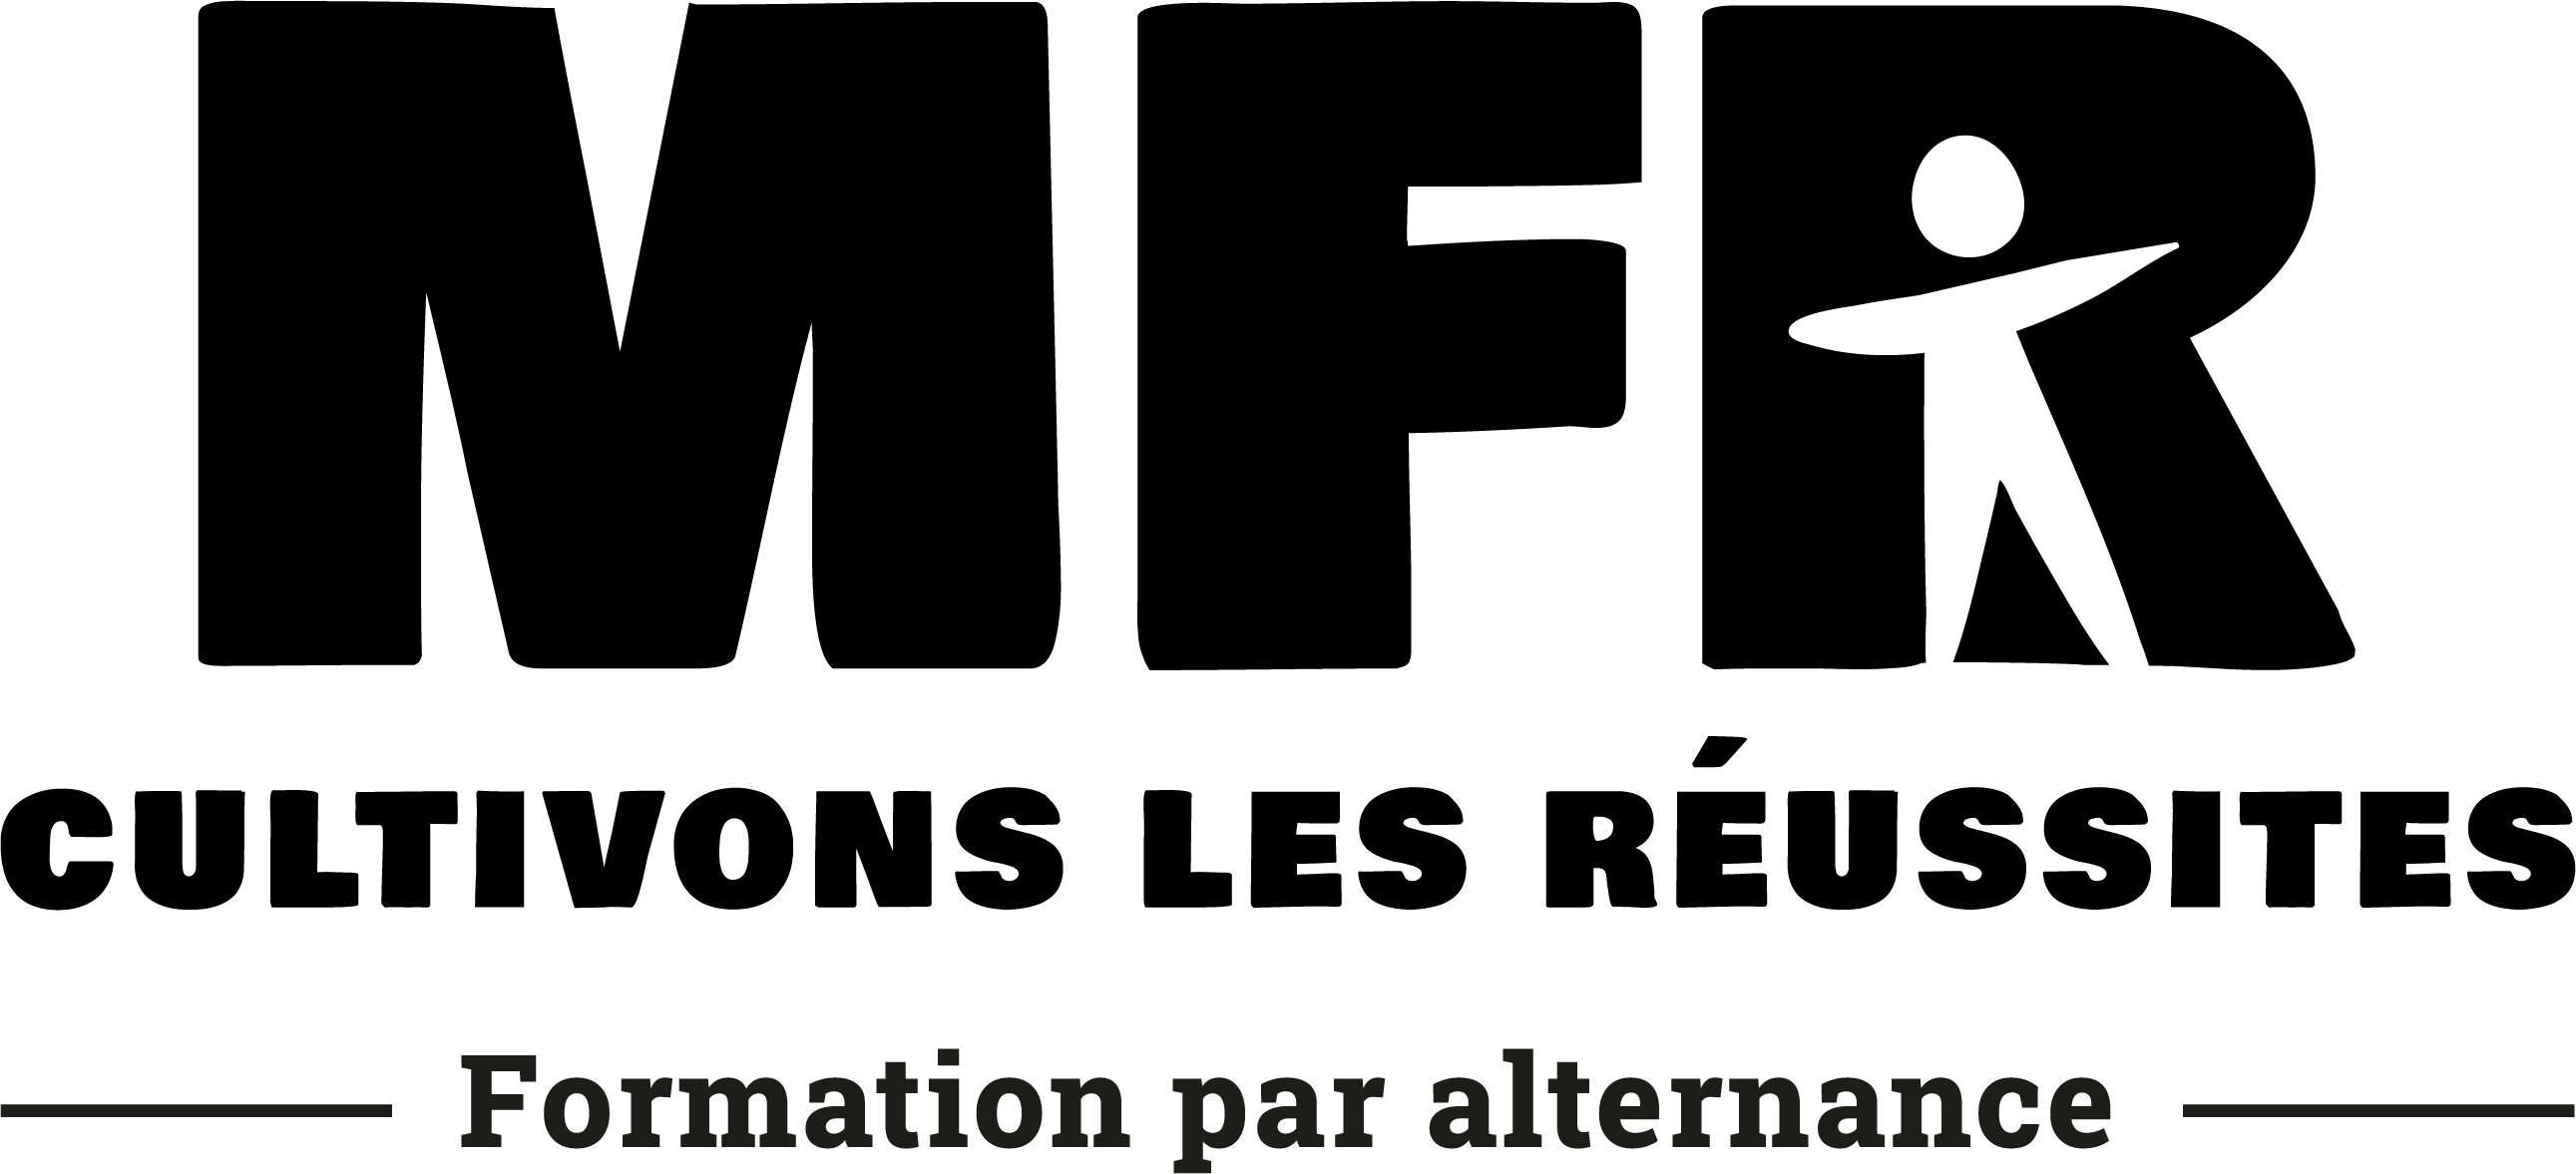 logo Maison familiale rurale d'Anneyron (MFR)